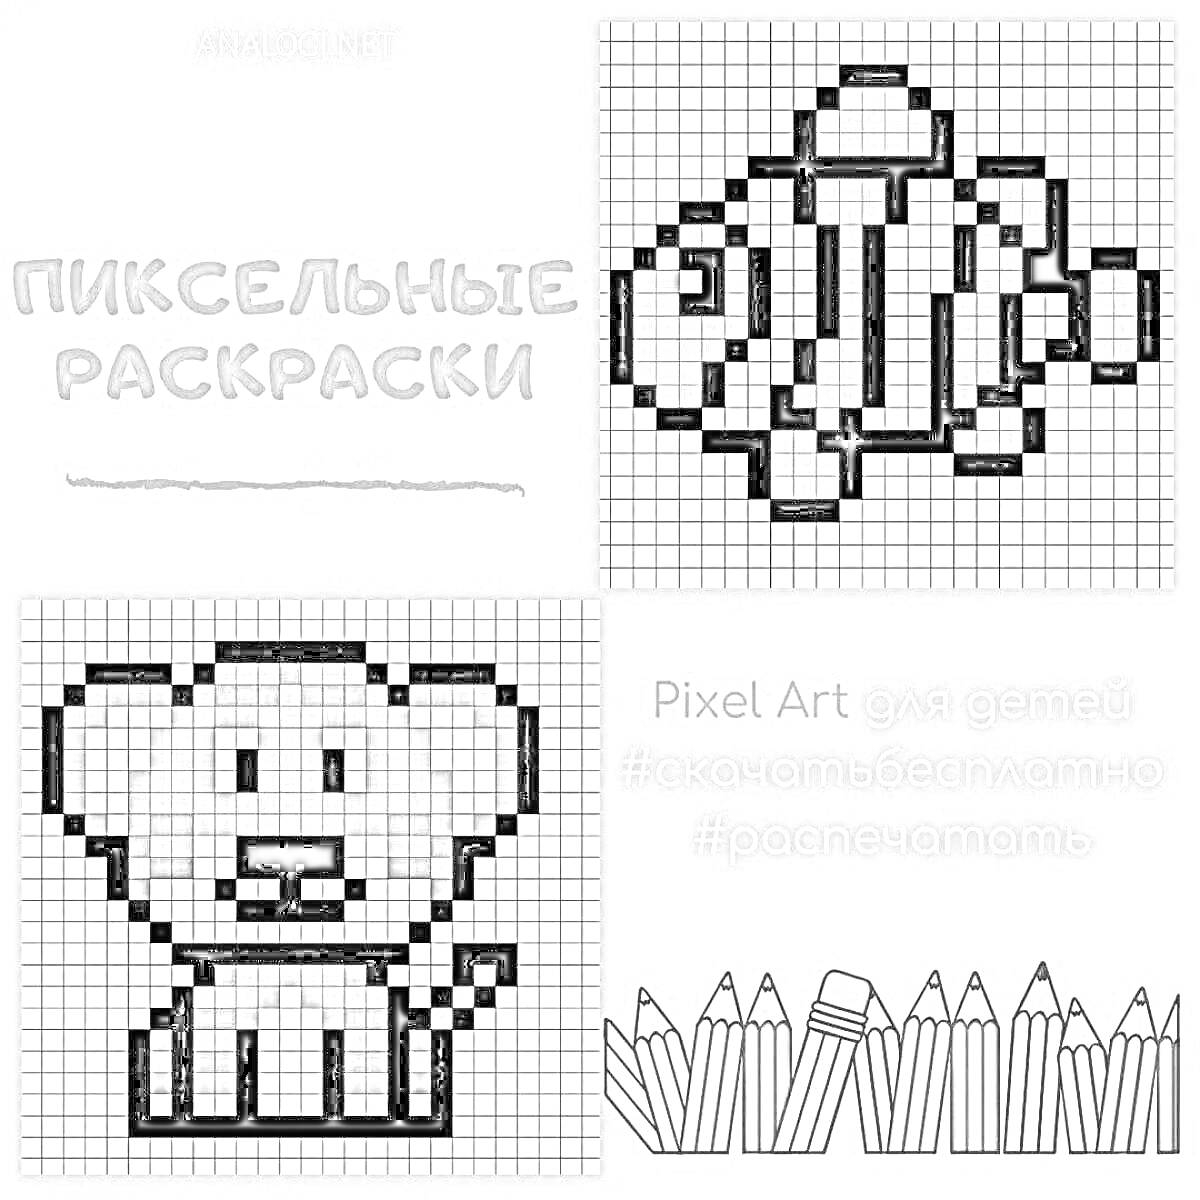 Раскраска Пиксельные раскраски: клоунская рыба и медвежонок, стандартные и увеличенные карандаши, хэштеги и описание